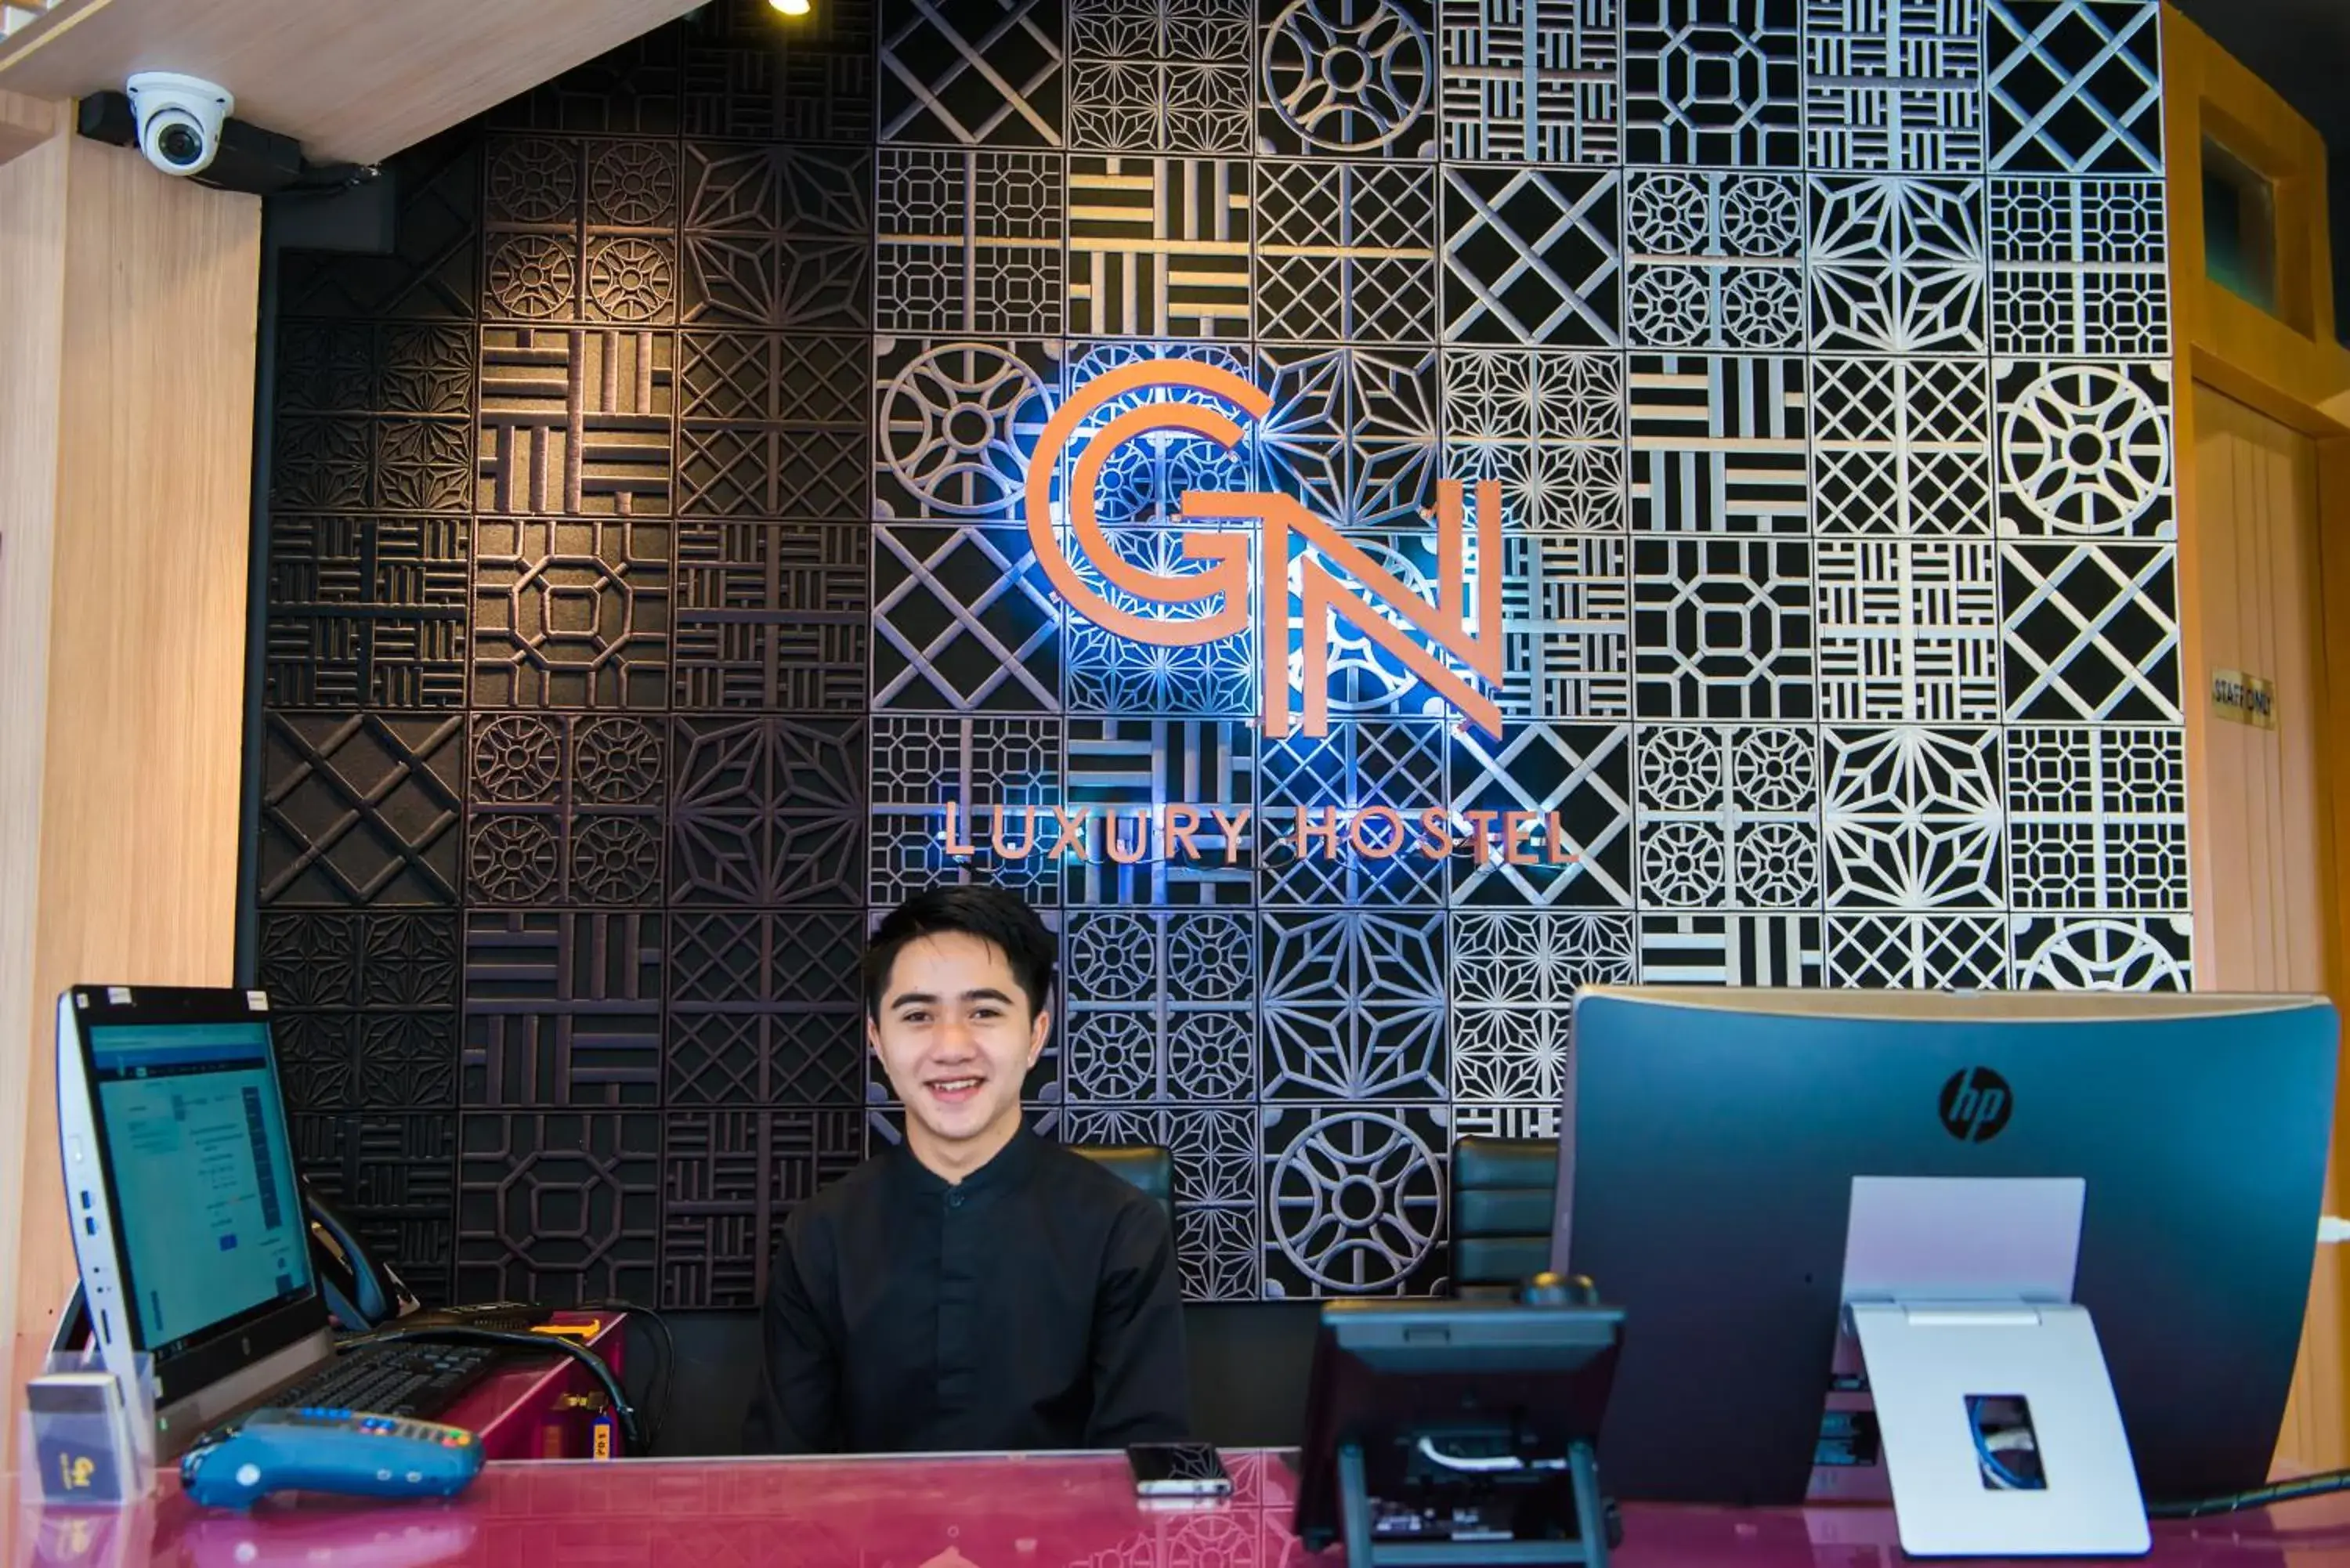 Staff in GN Luxury Hostel